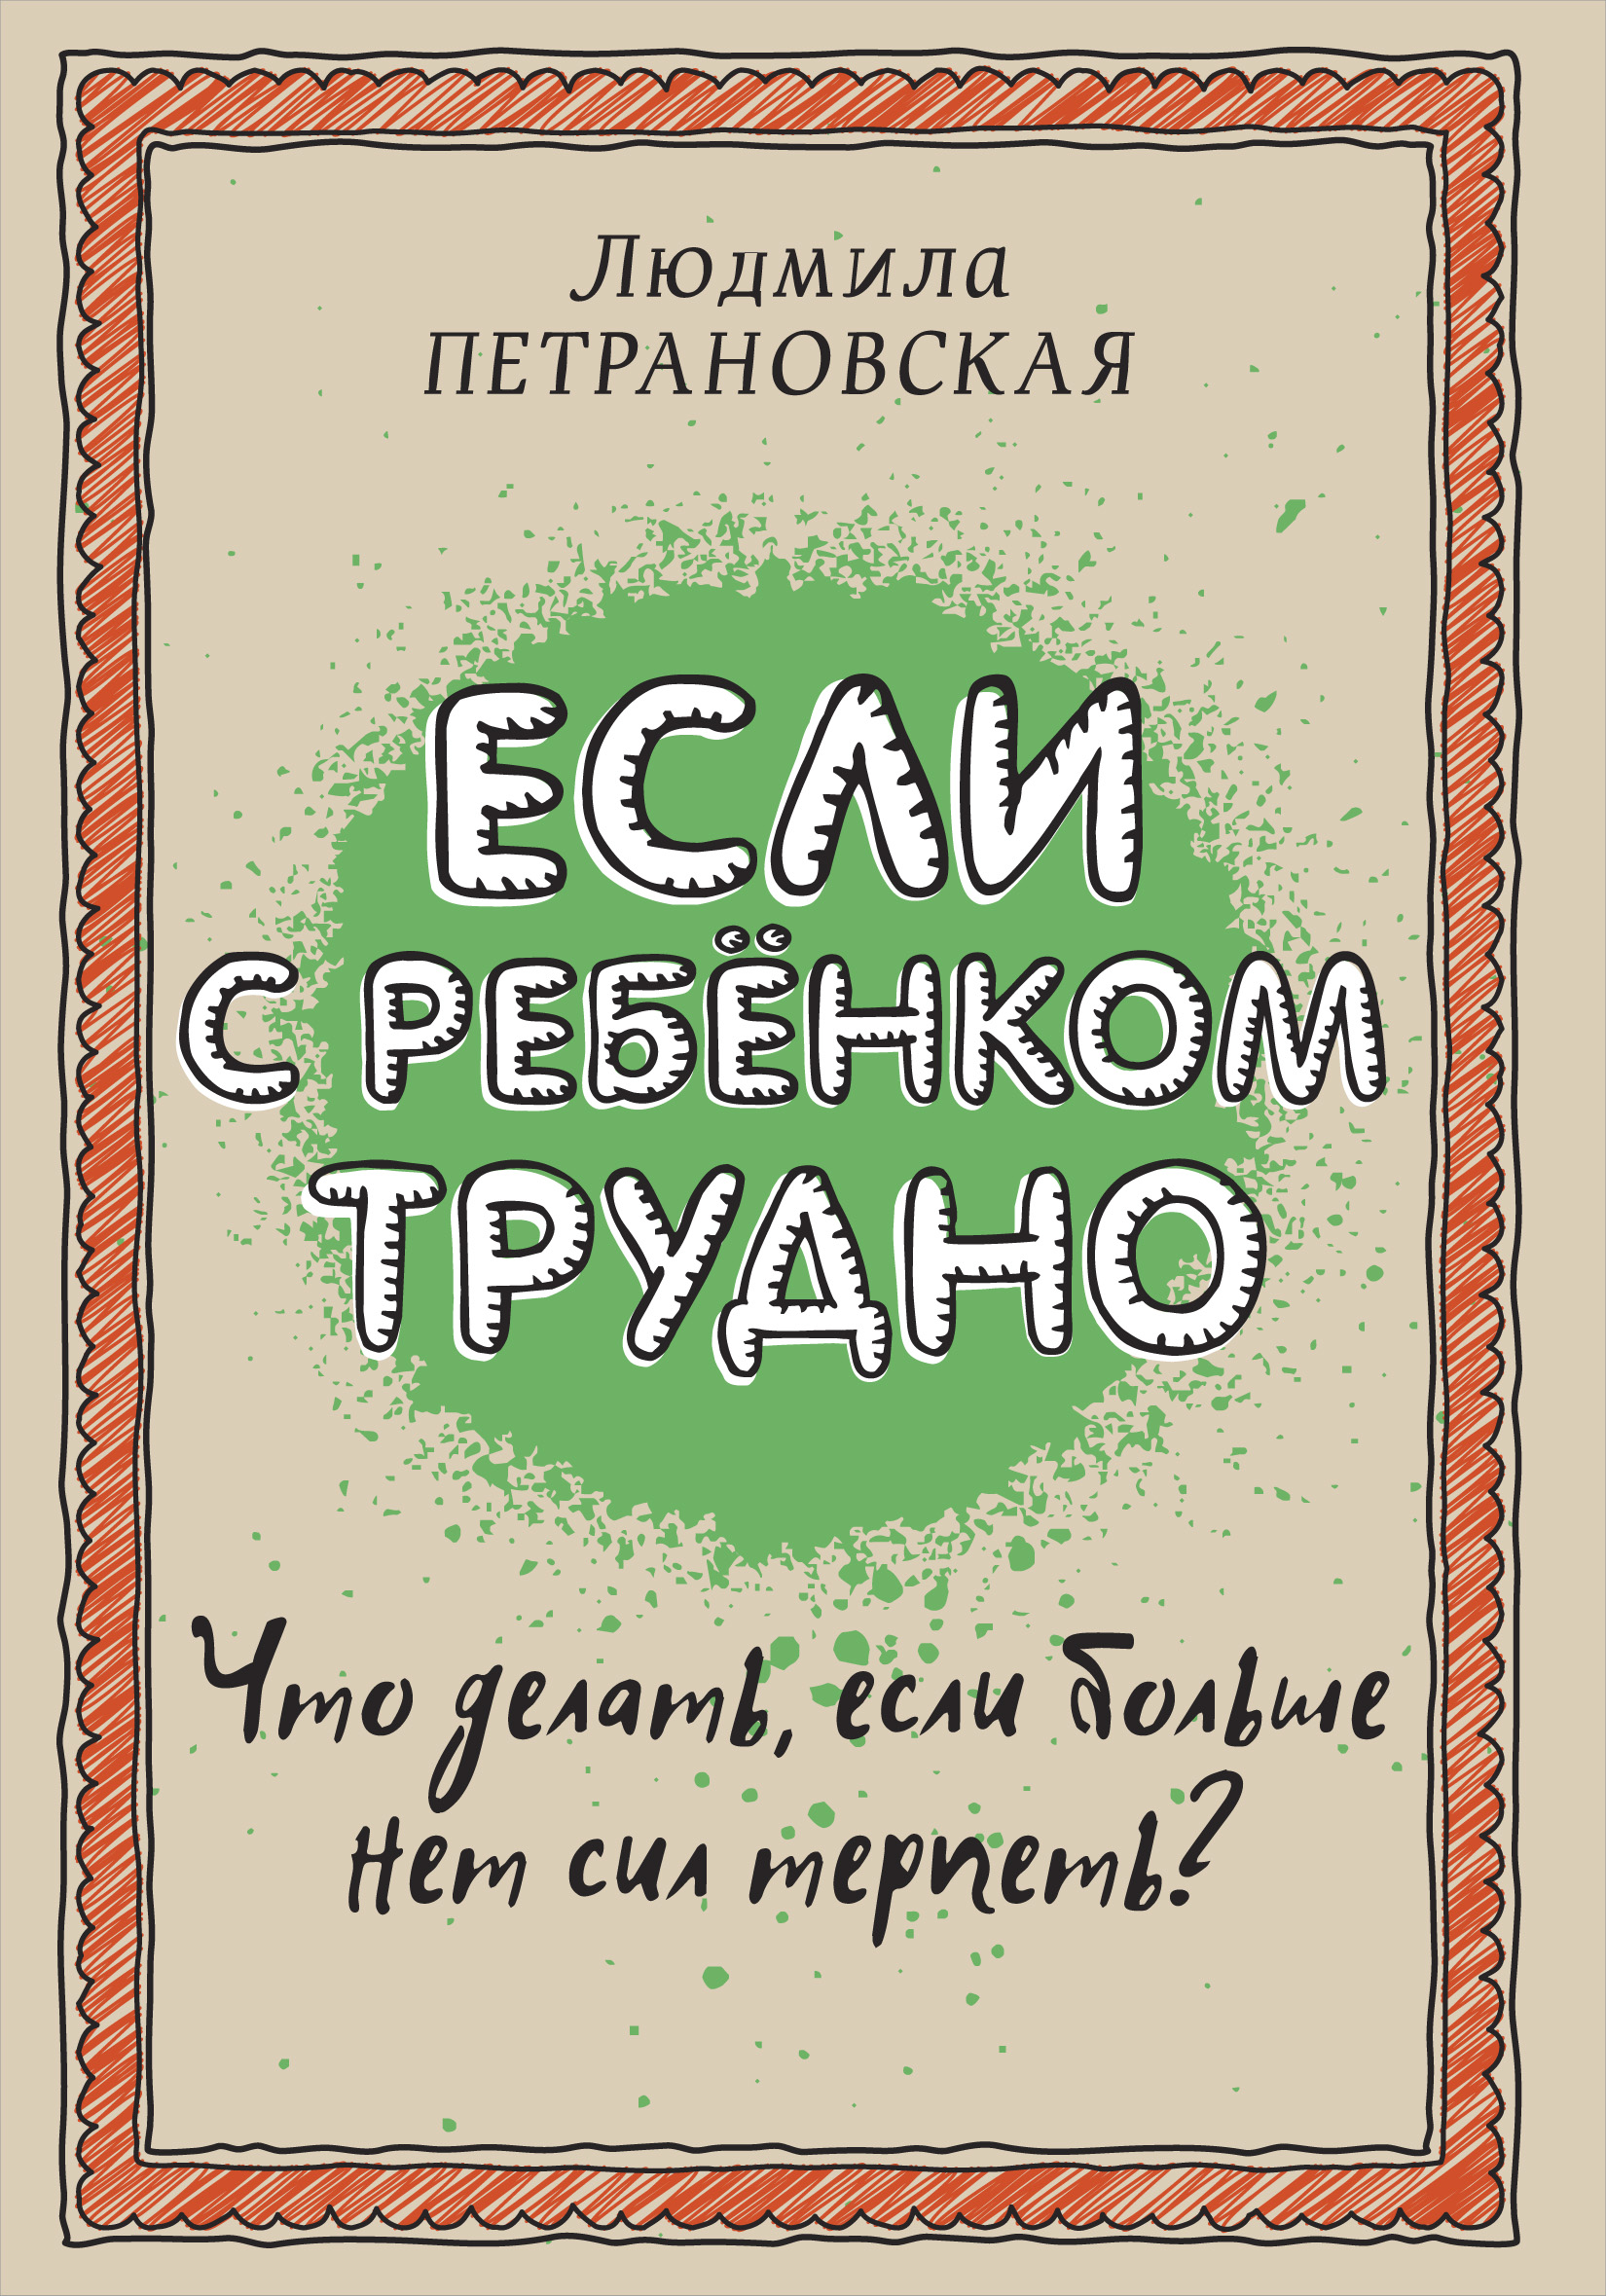 Book “Если с ребёнком трудно” by Людмила Петрановская